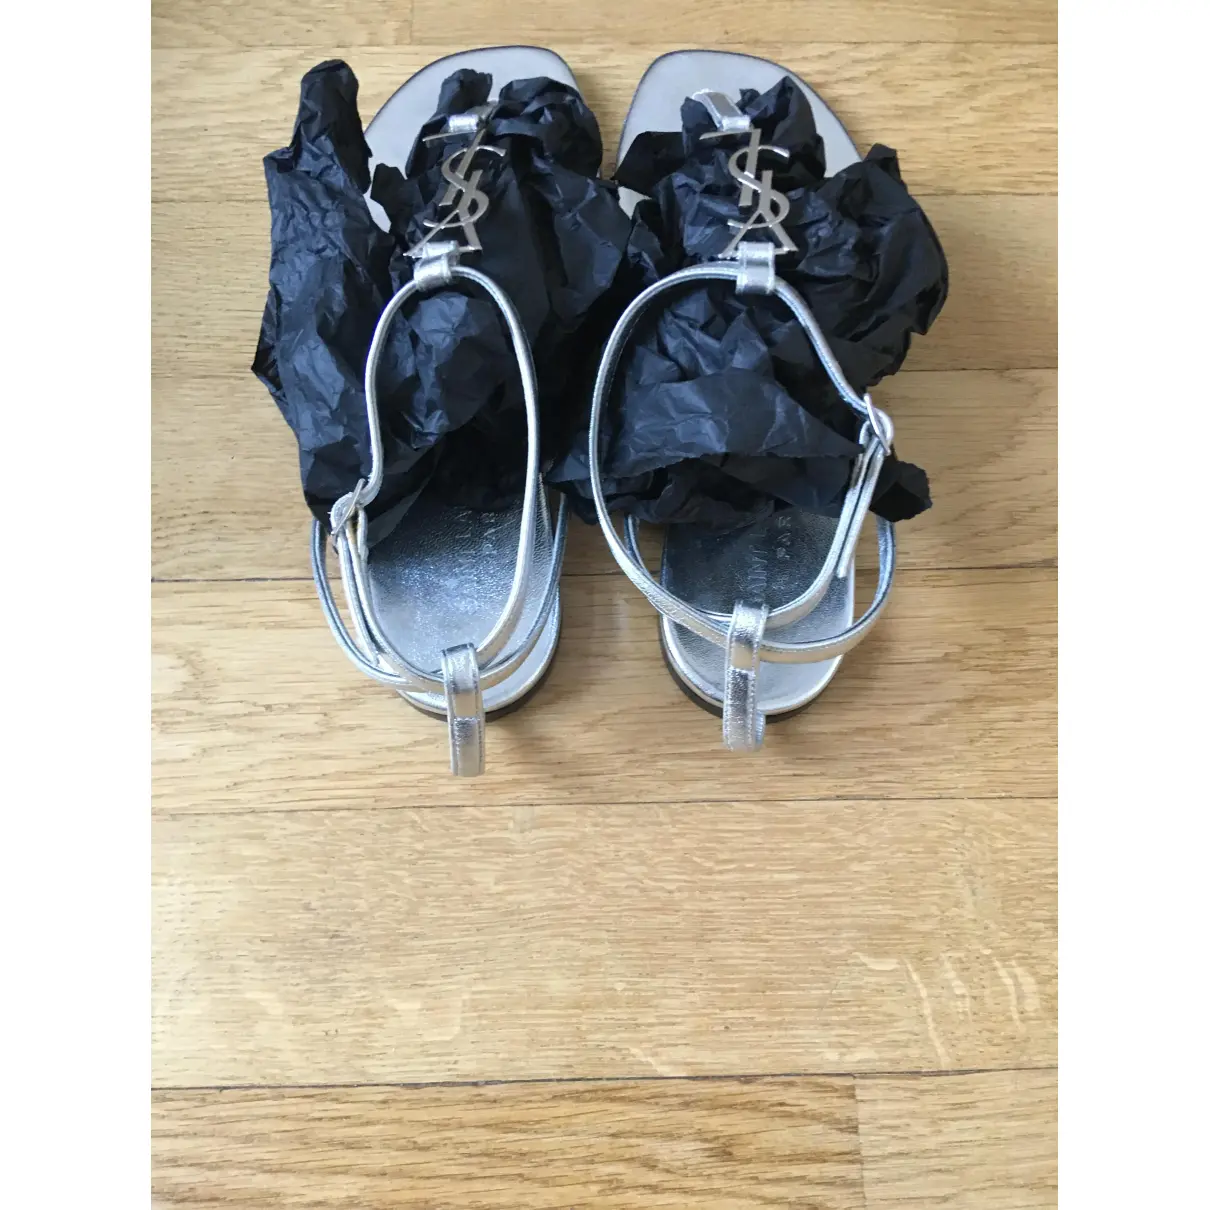 Cassandra leather sandals Saint Laurent